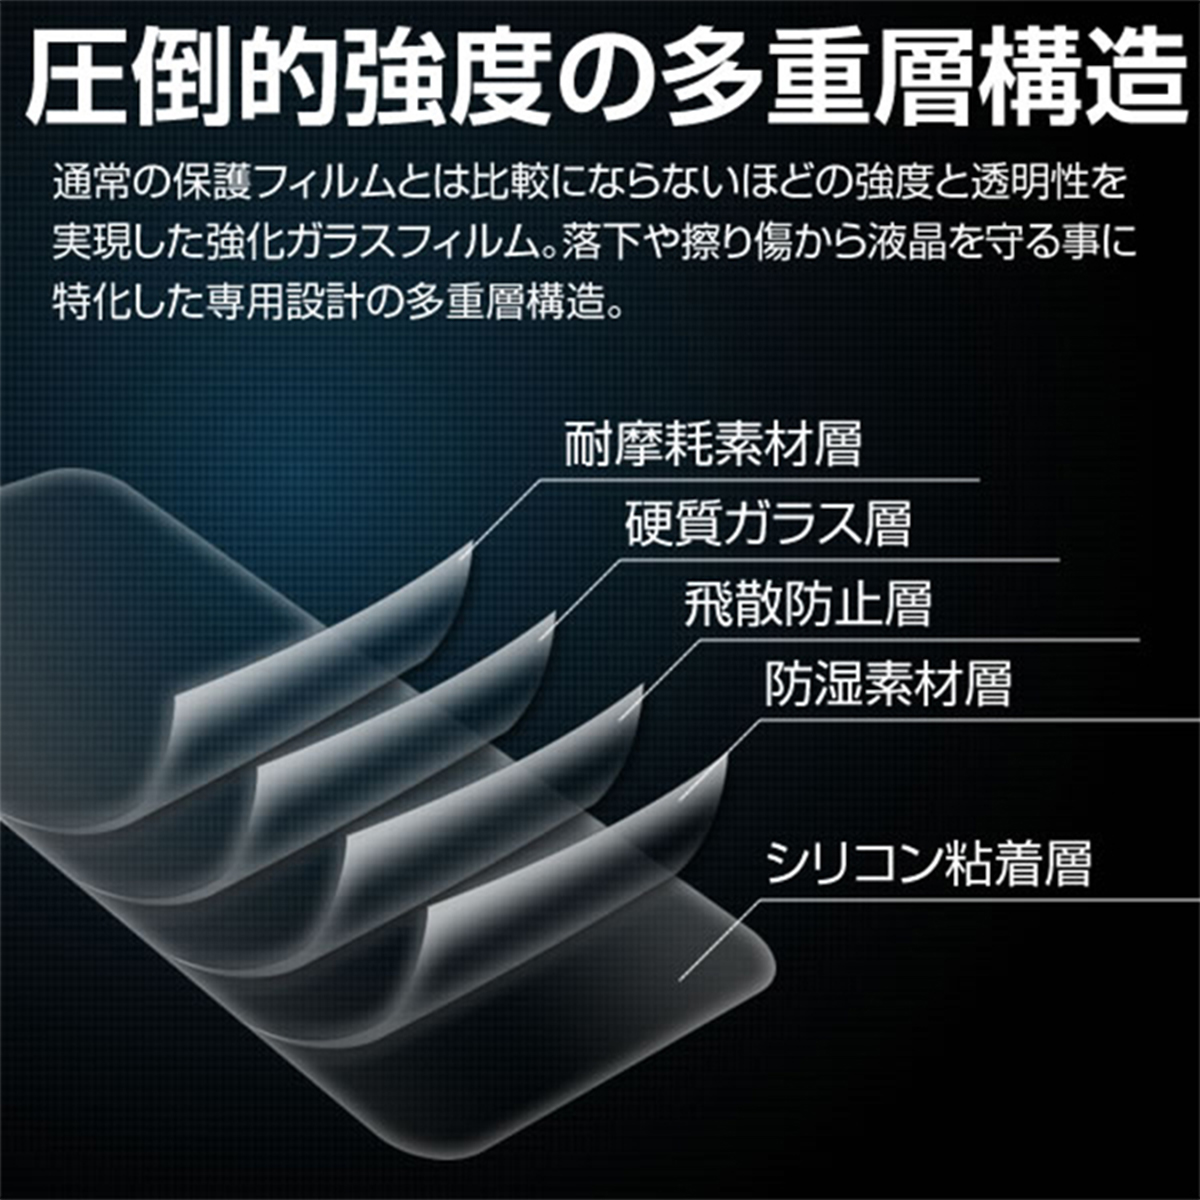 Redmi Note 9S 覗き見防止強化ガラス保護フィルム 9H